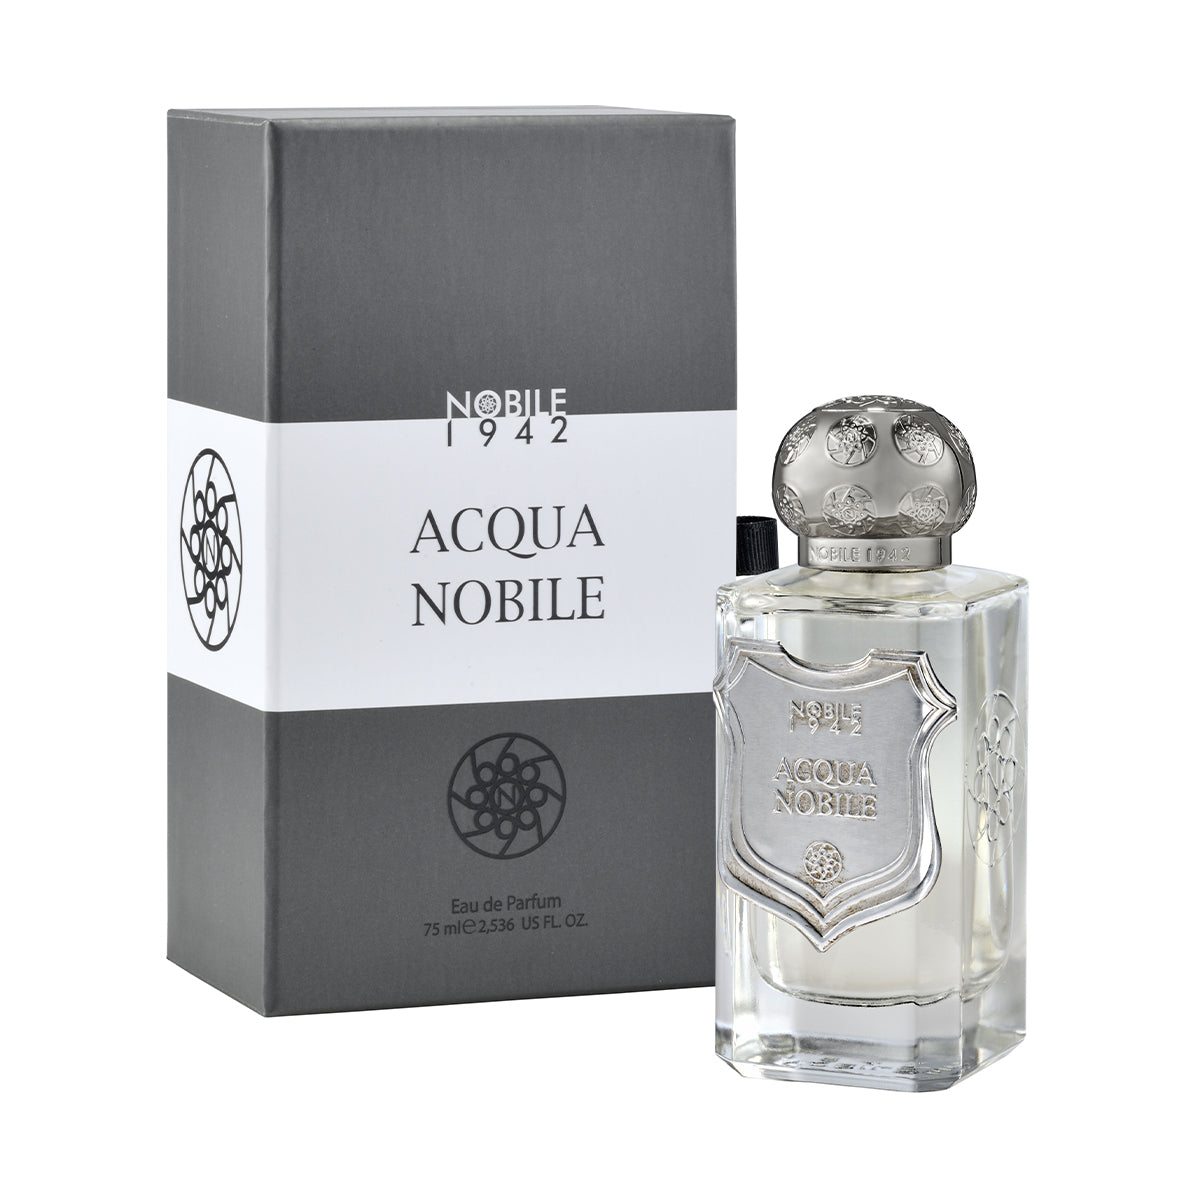 Acqua Nobile - NOBILE 1942 -  EDP 75ml